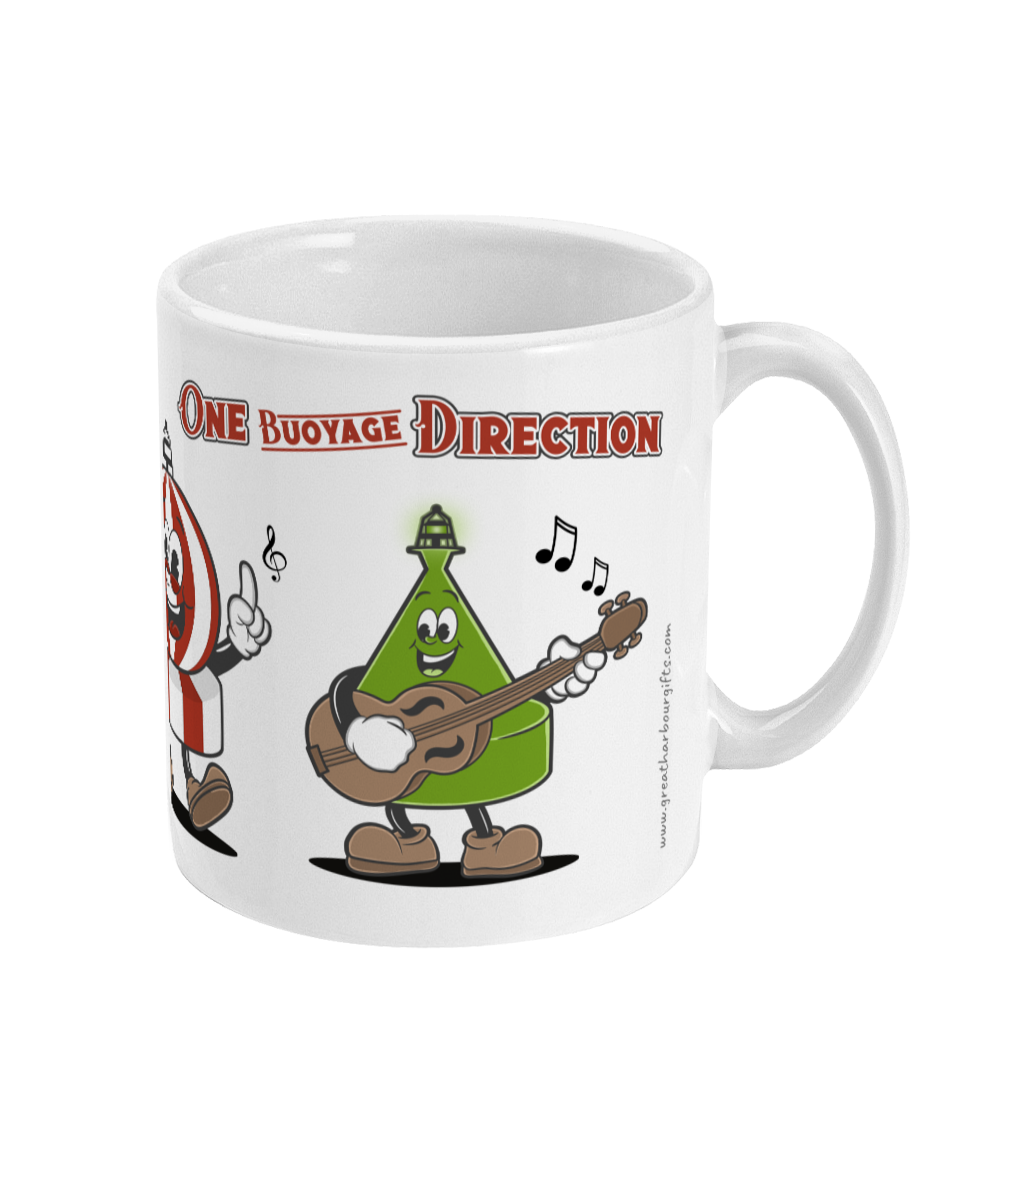 Buoy band mug, 'One Buoyage Direction'